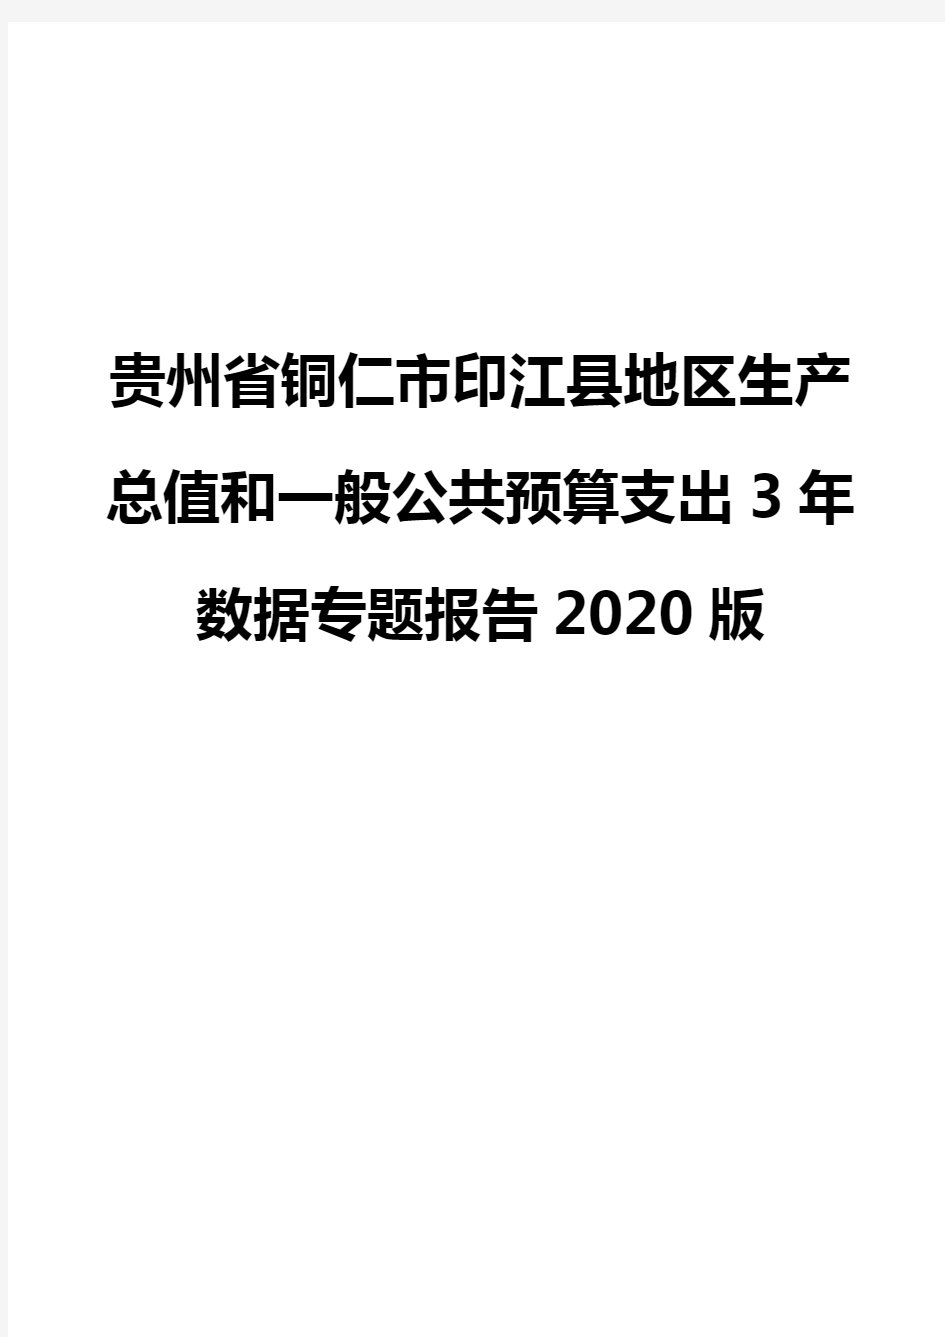 贵州省铜仁市印江县地区生产总值和一般公共预算支出3年数据专题报告2020版